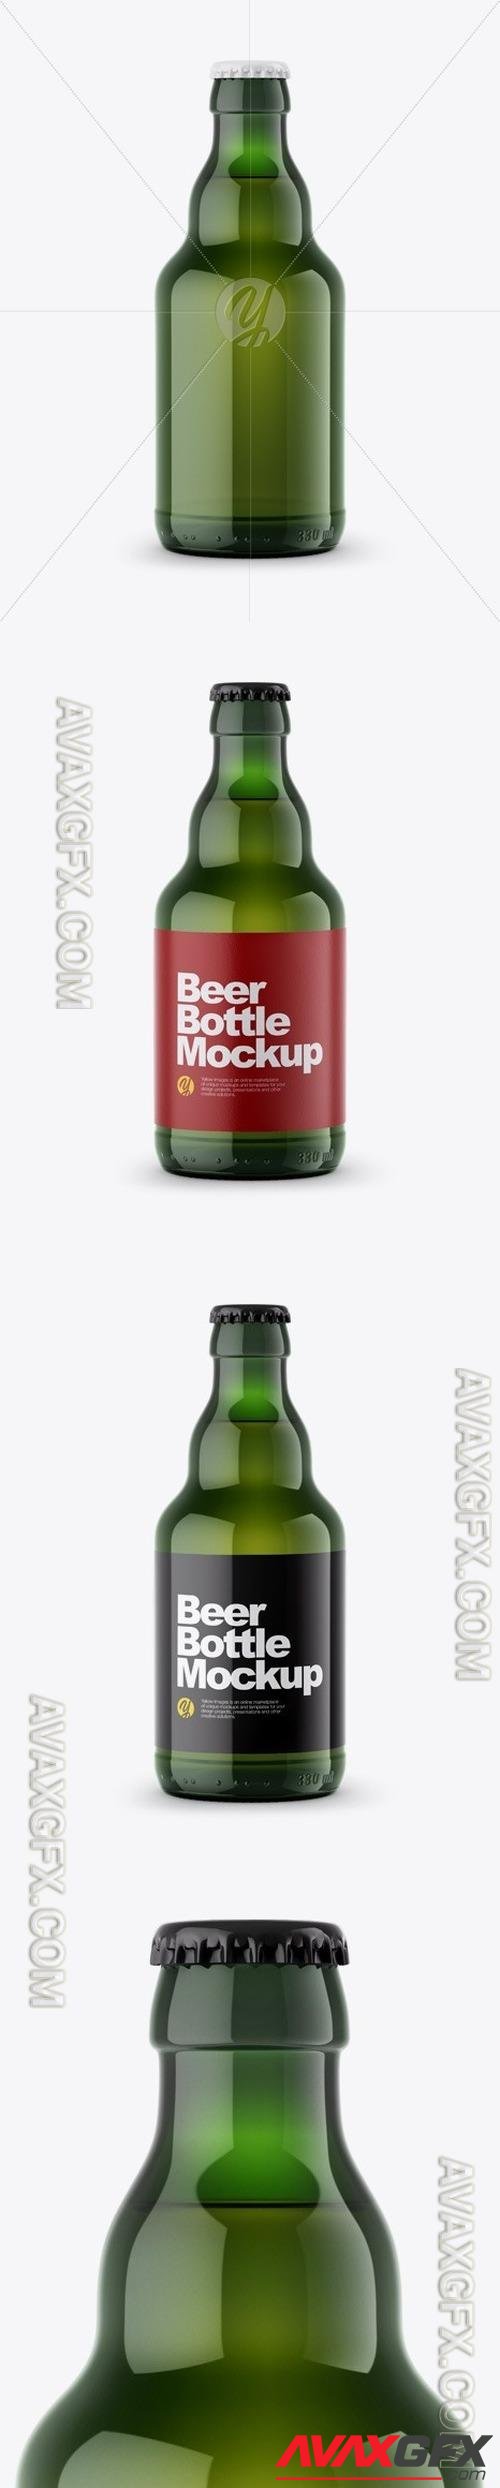 Green Beer Bottle Mockup 48826 TIF